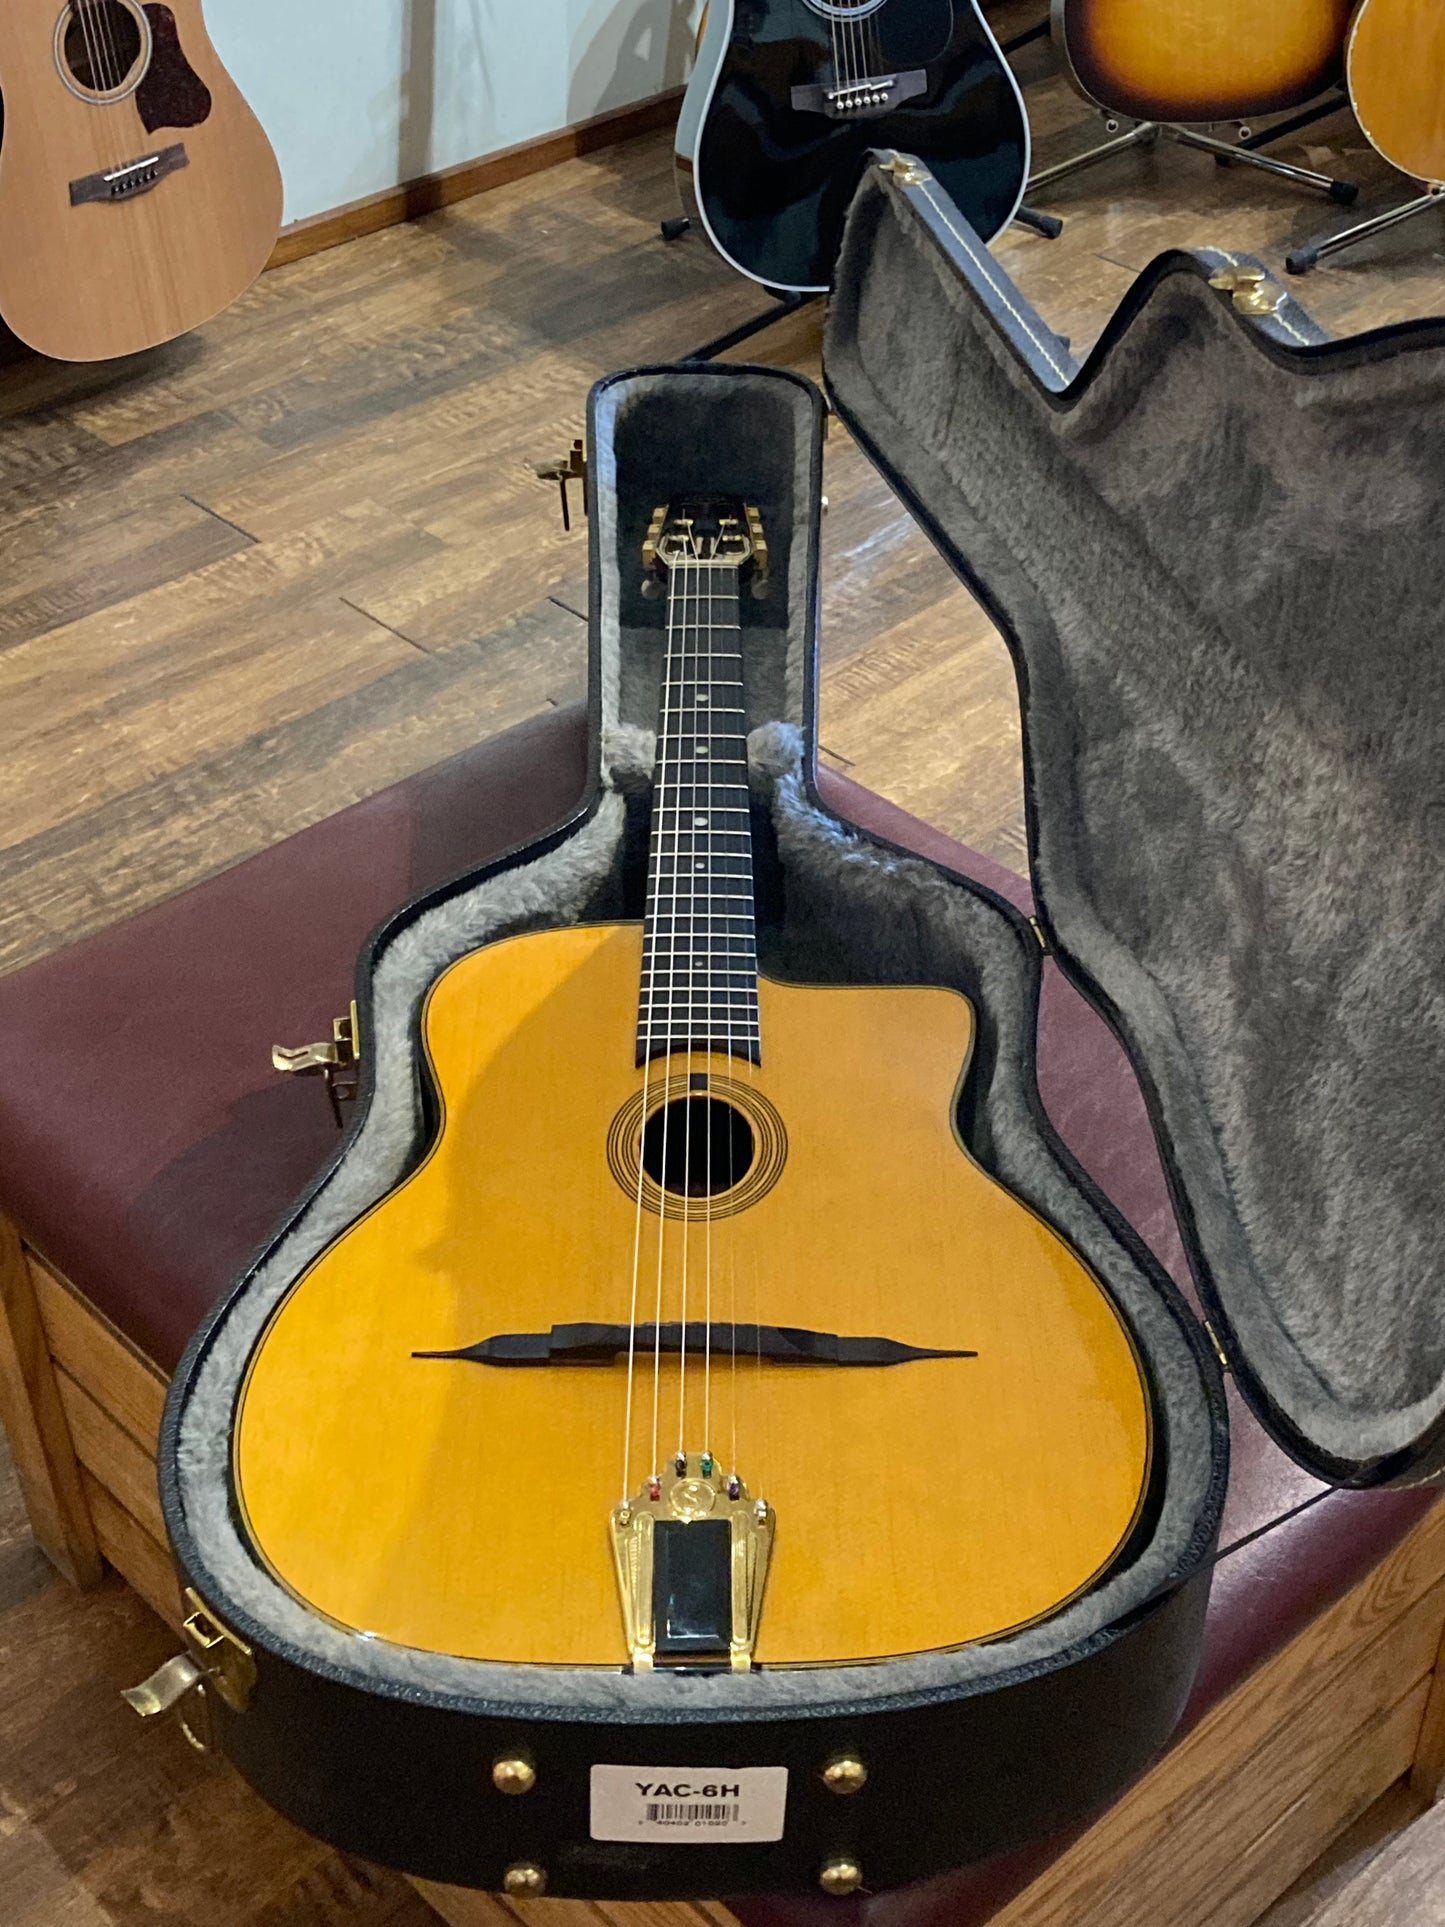 Gitane DG-255 Professional Gypsy Jazz Guitar w/Case (Used)